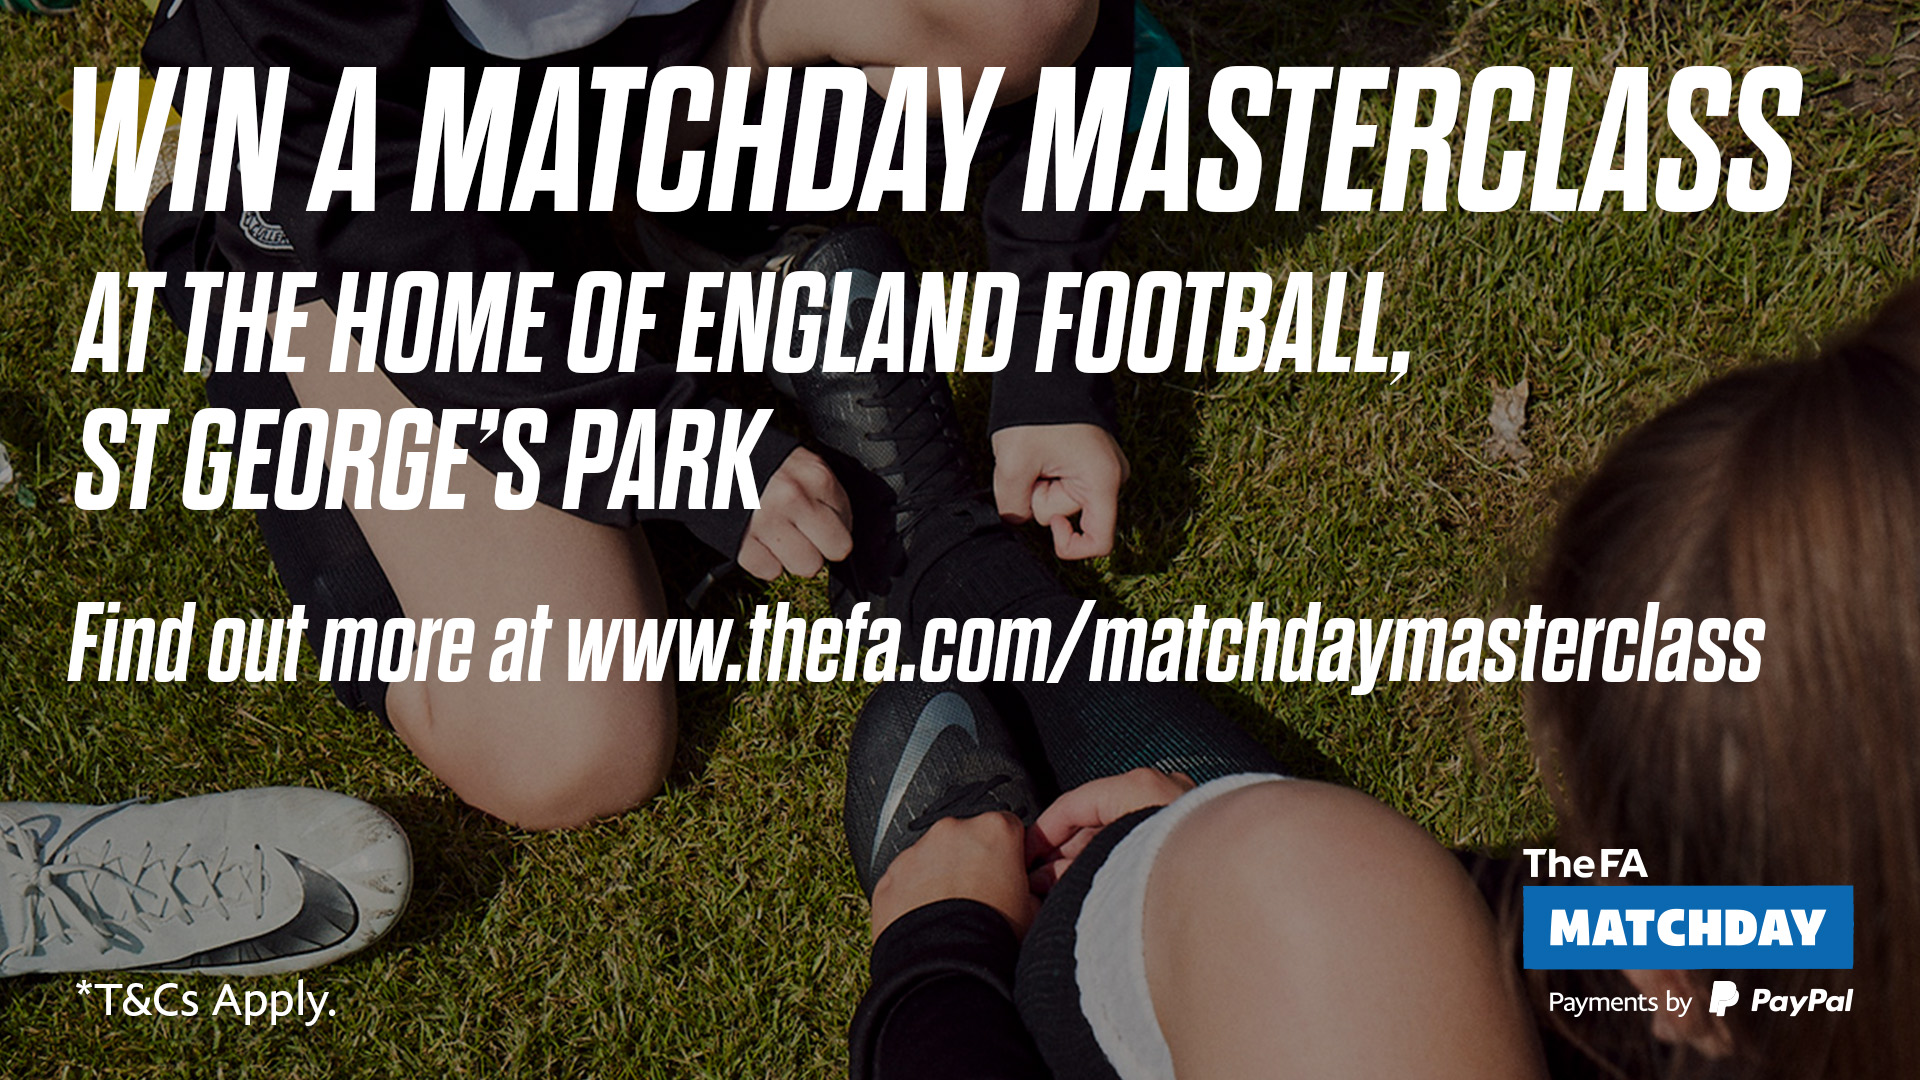 Matchday Masterclass